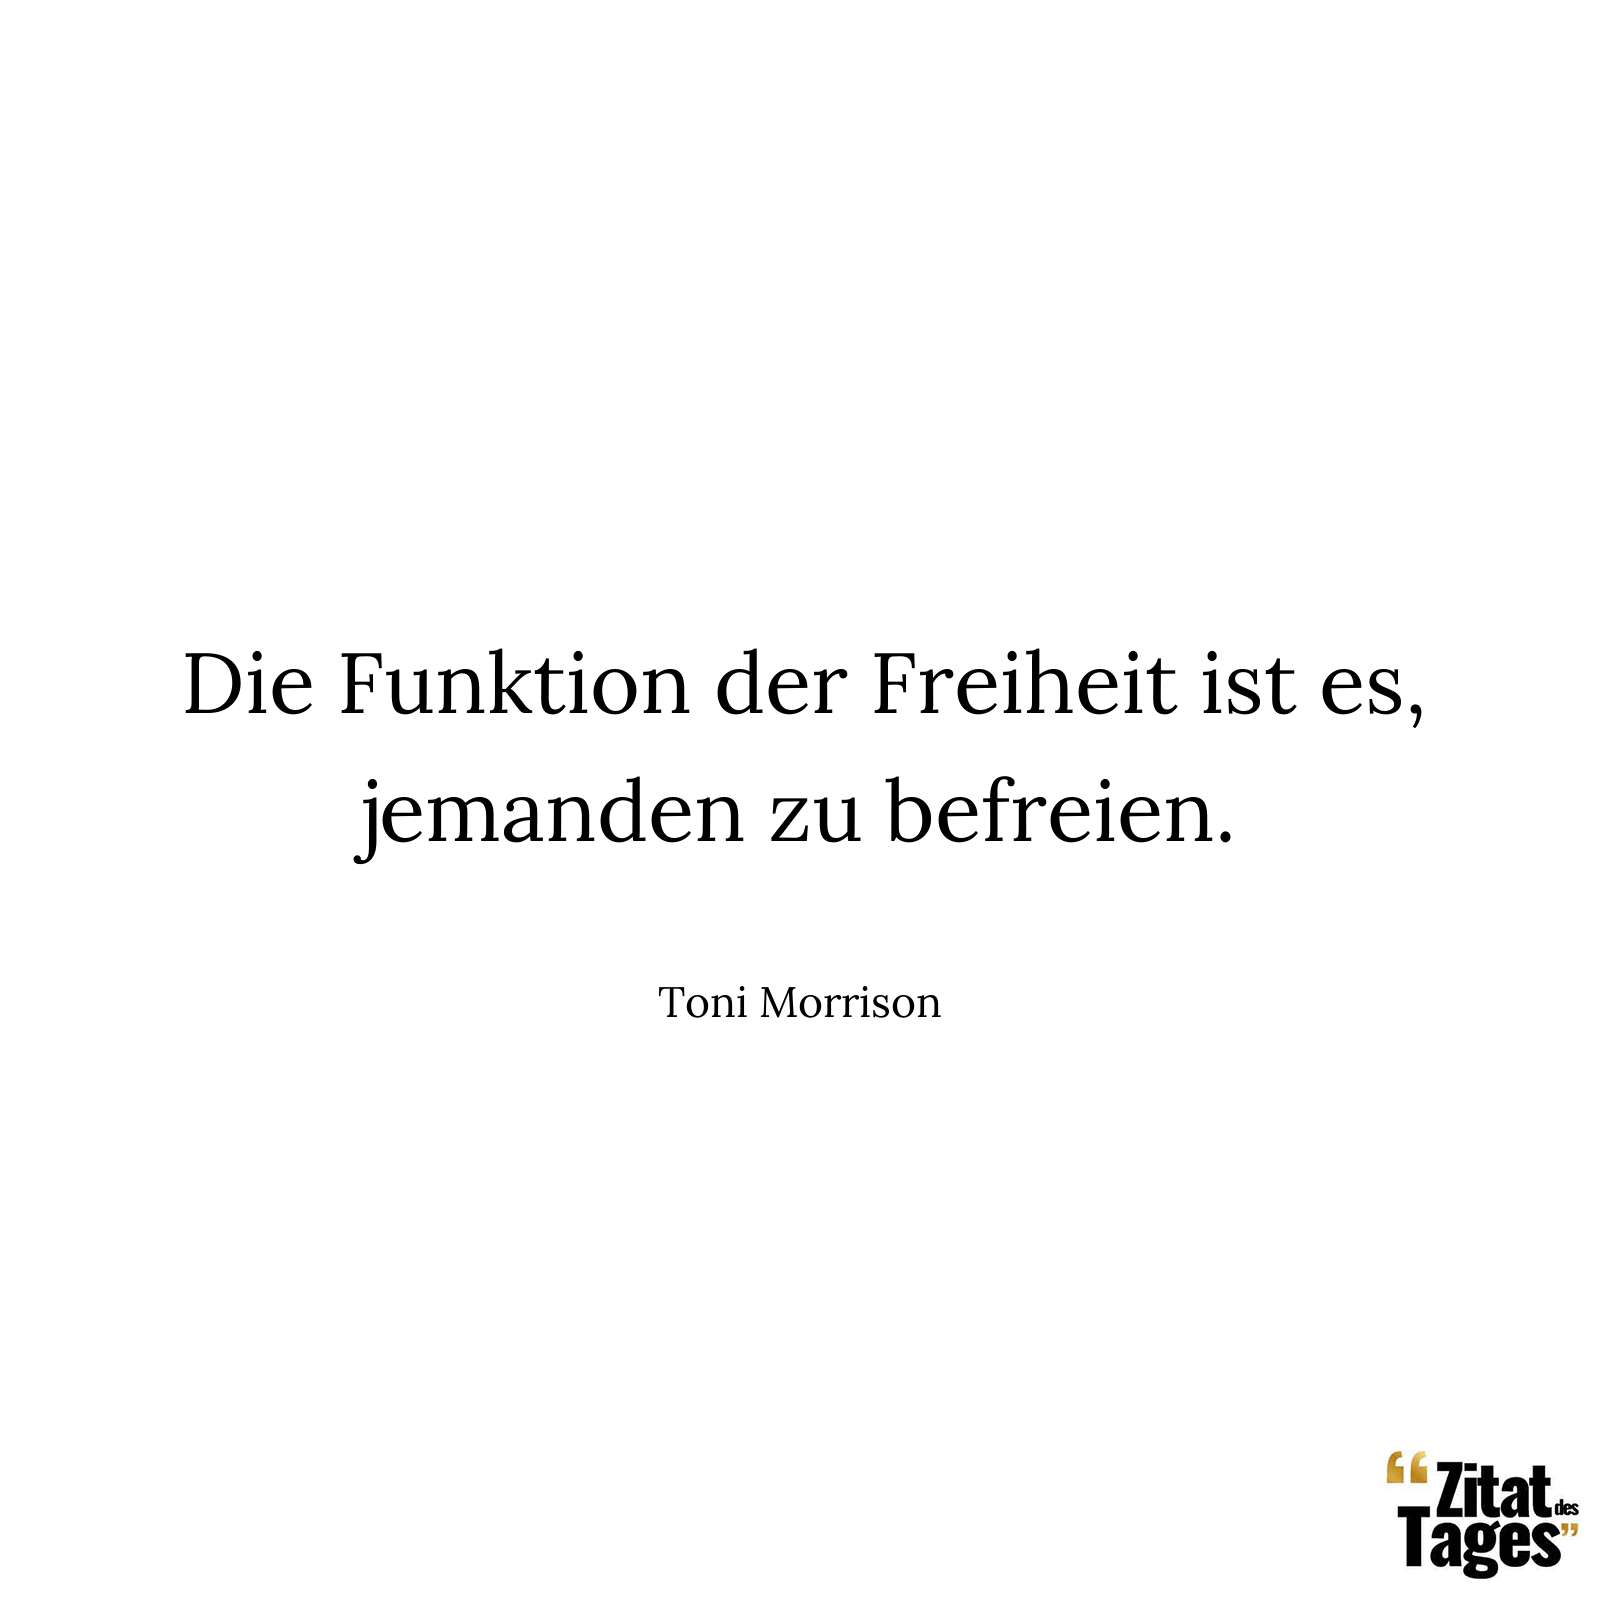 Die Funktion der Freiheit ist es, jemanden zu befreien. - Toni Morrison